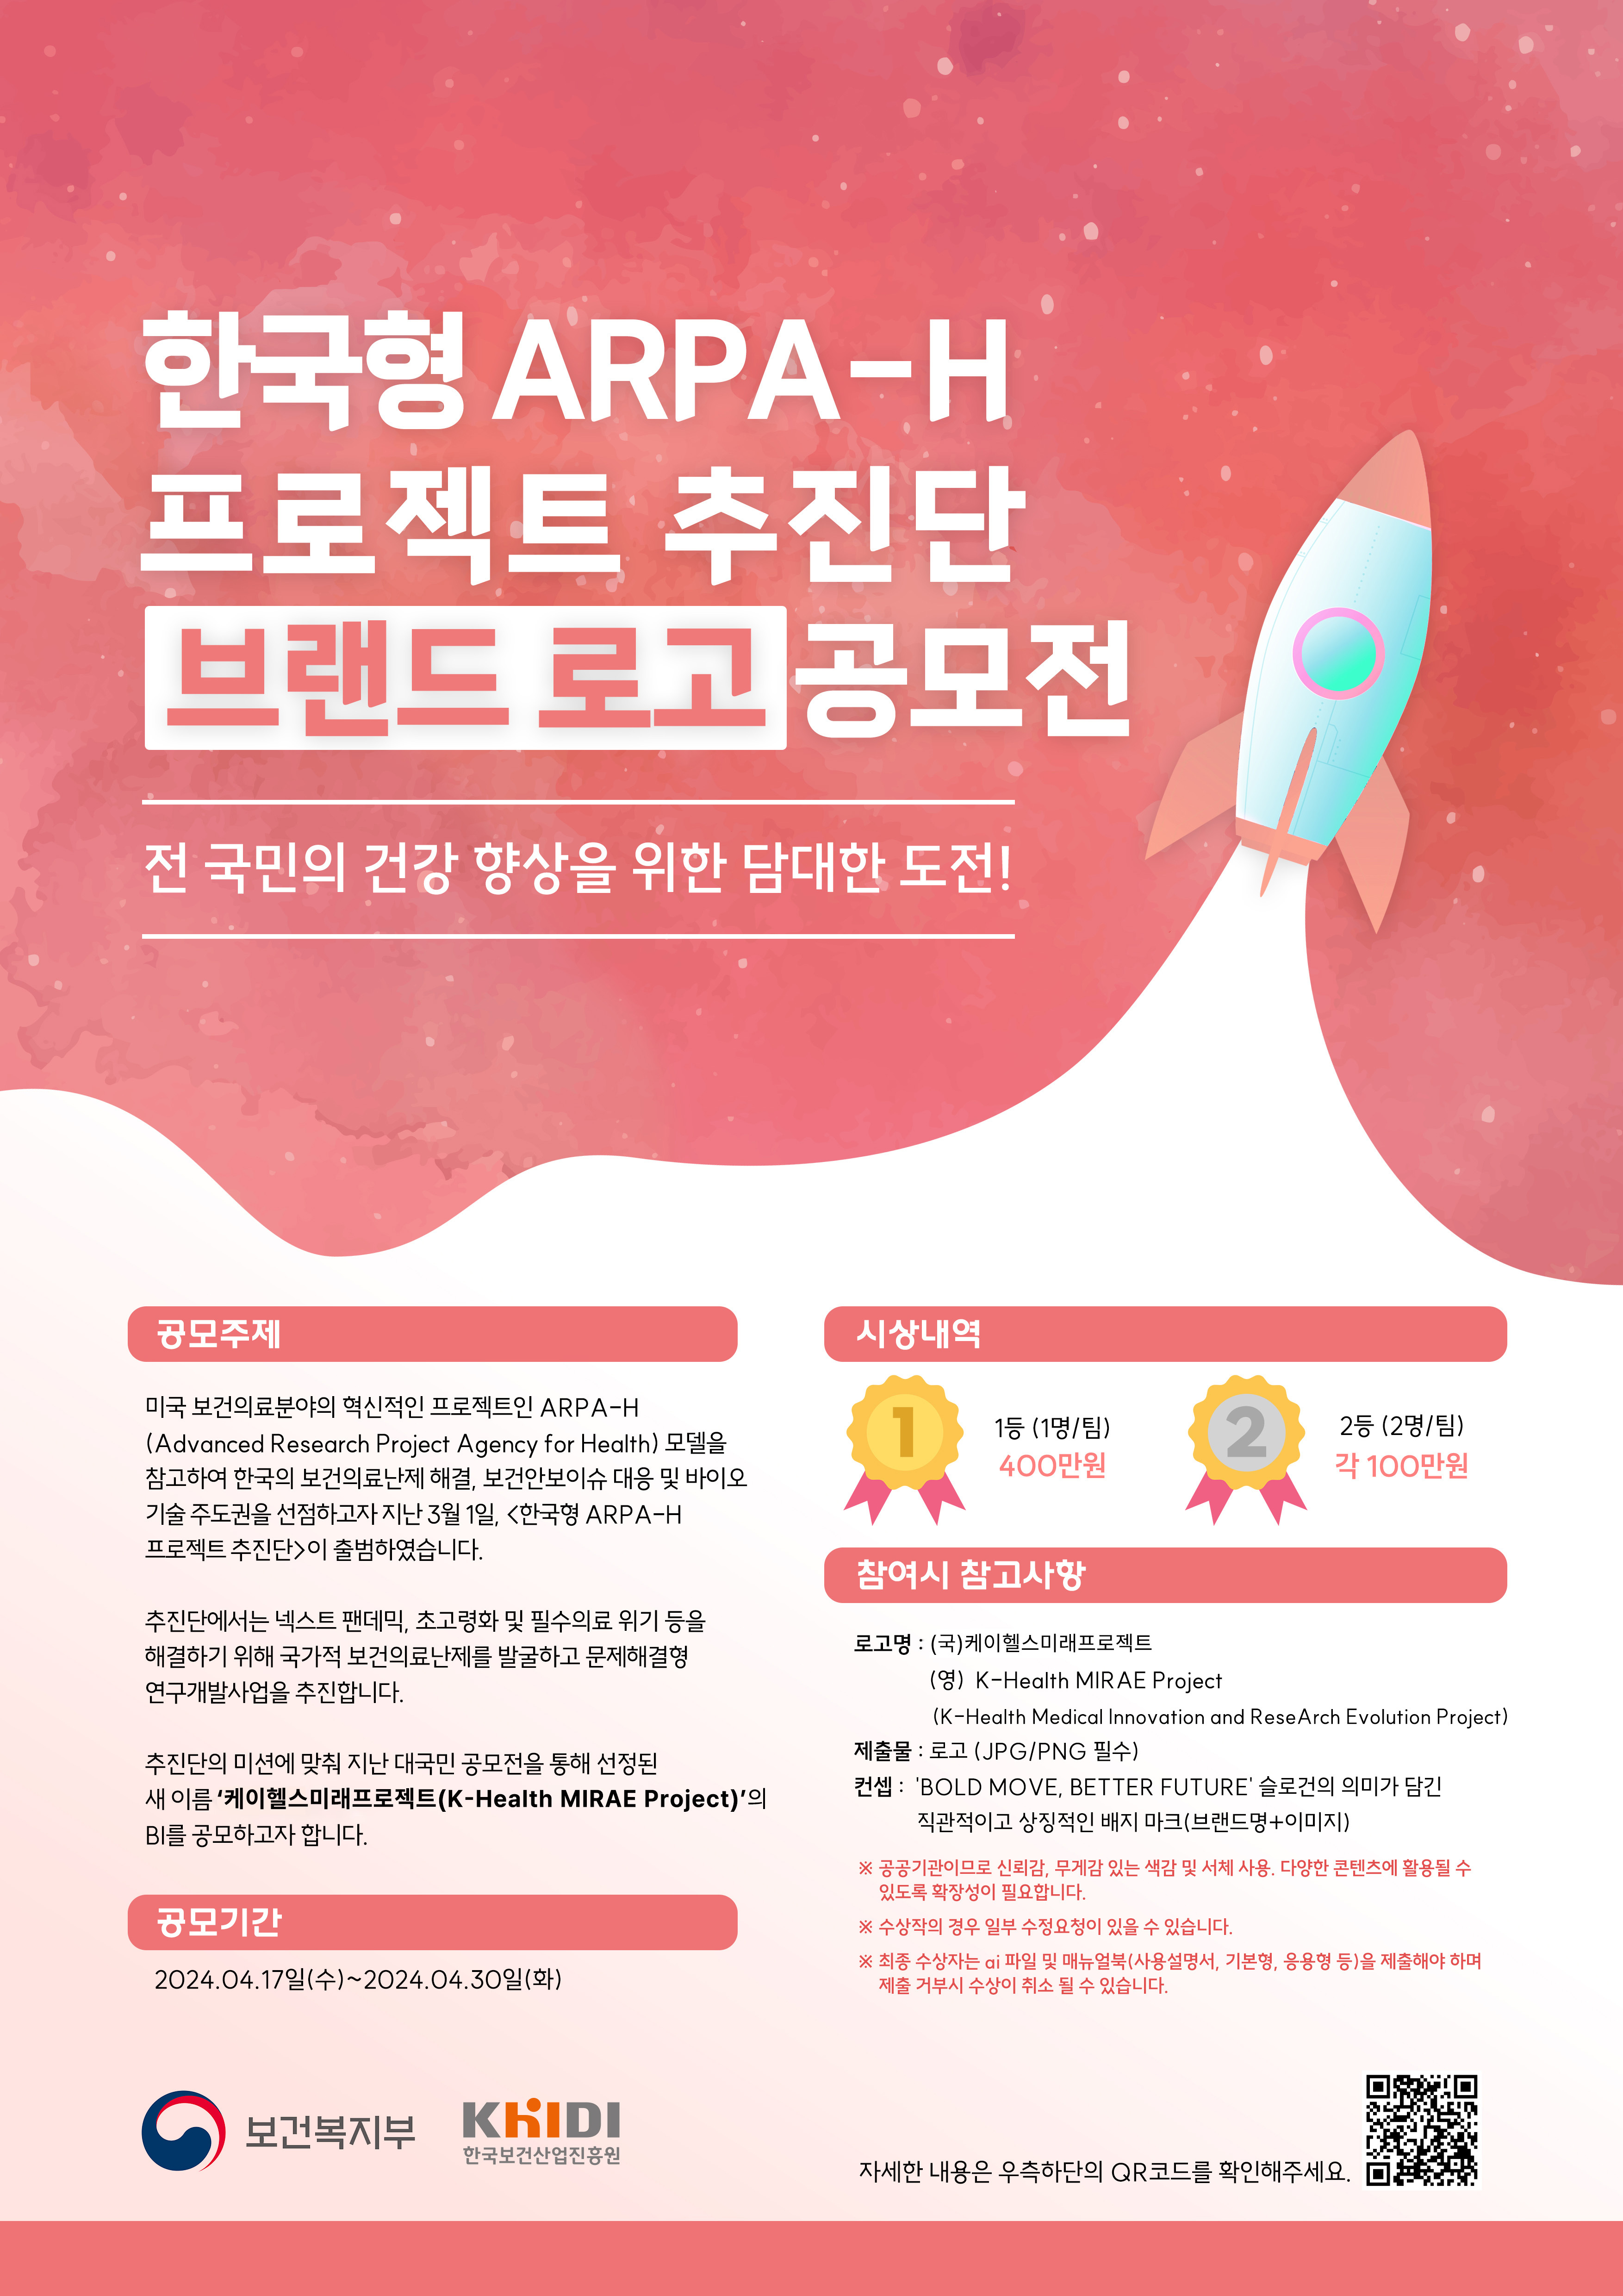 한국형 ARPA-H 프로젝트 추진단 브랜드 로고 공모전